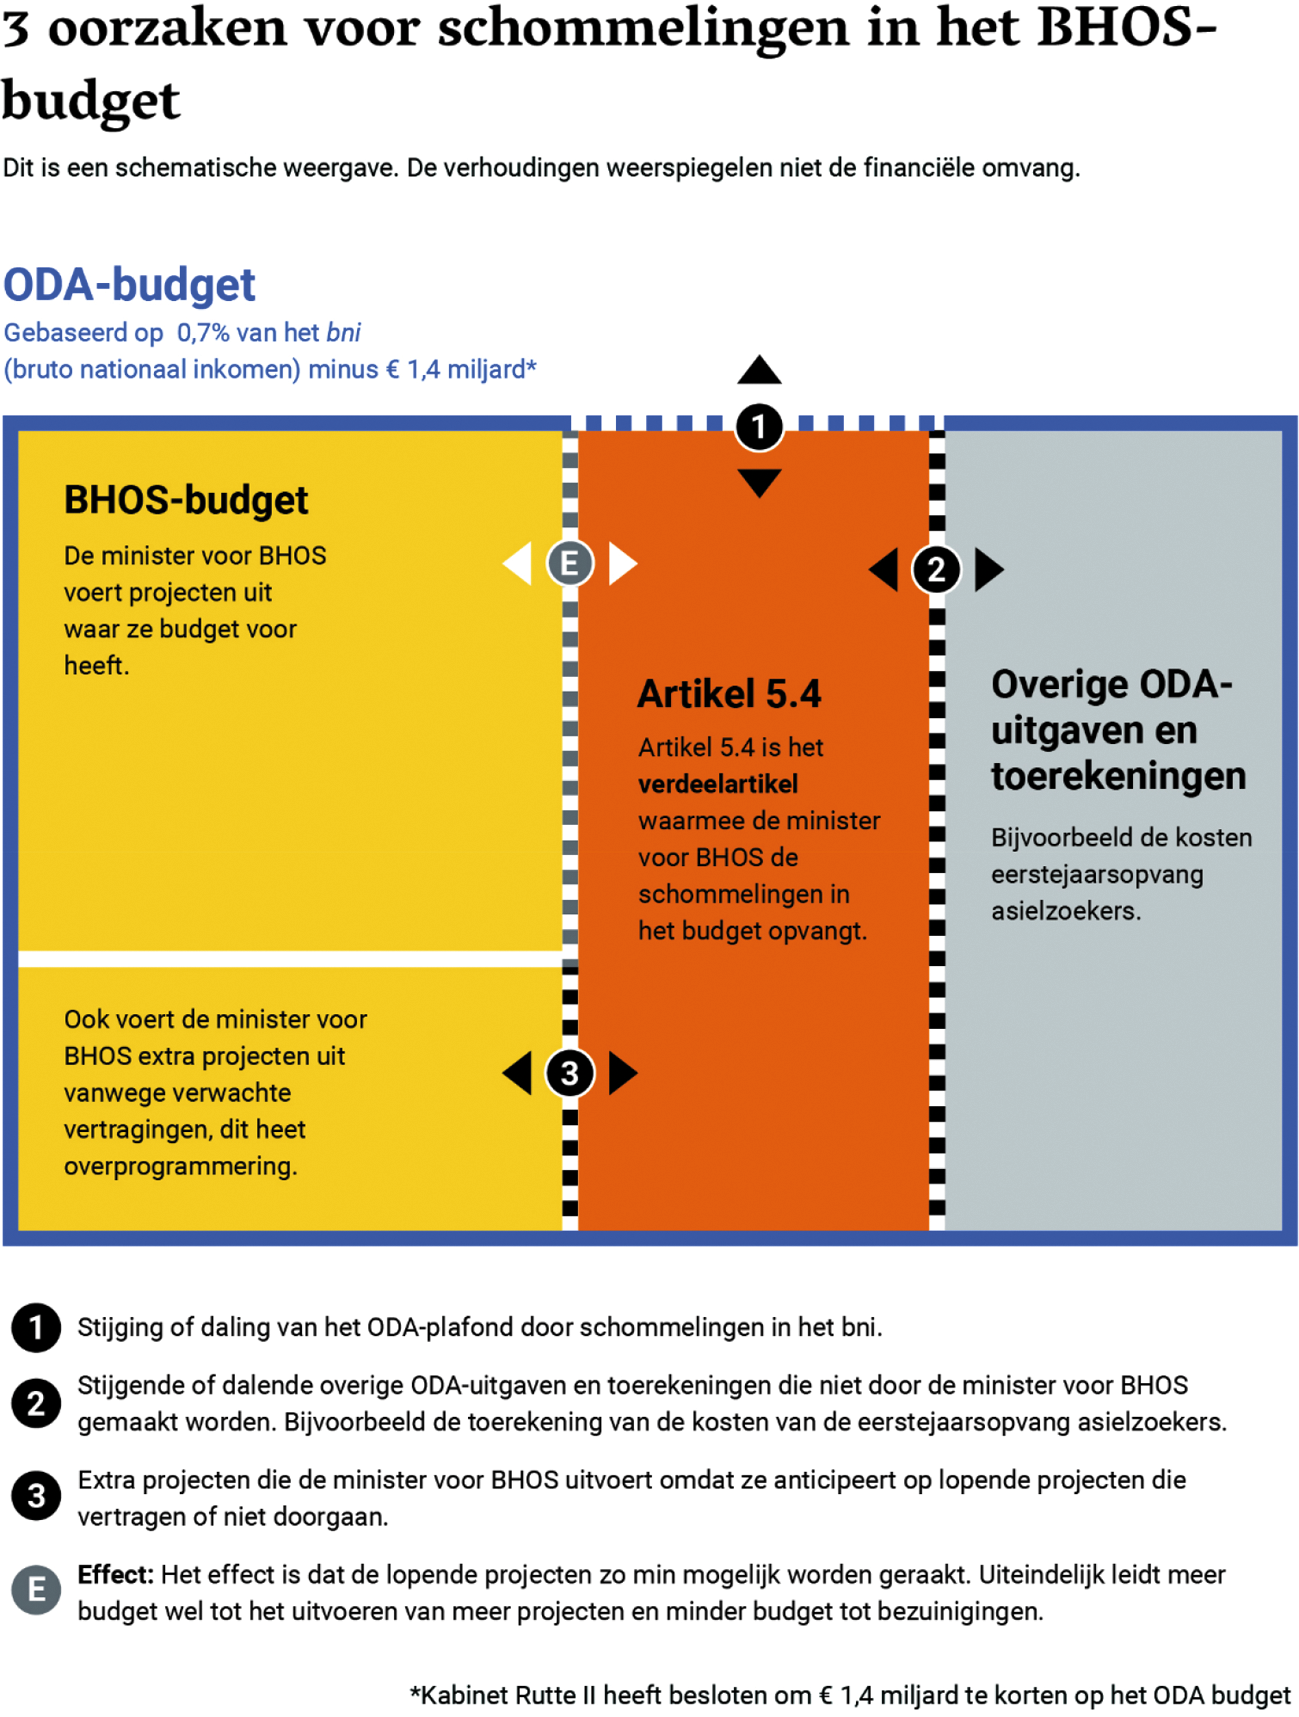 Figuur 1 – Grafische weergaven van de 3 oorzaken voor schommelingen in het BHOS-budget